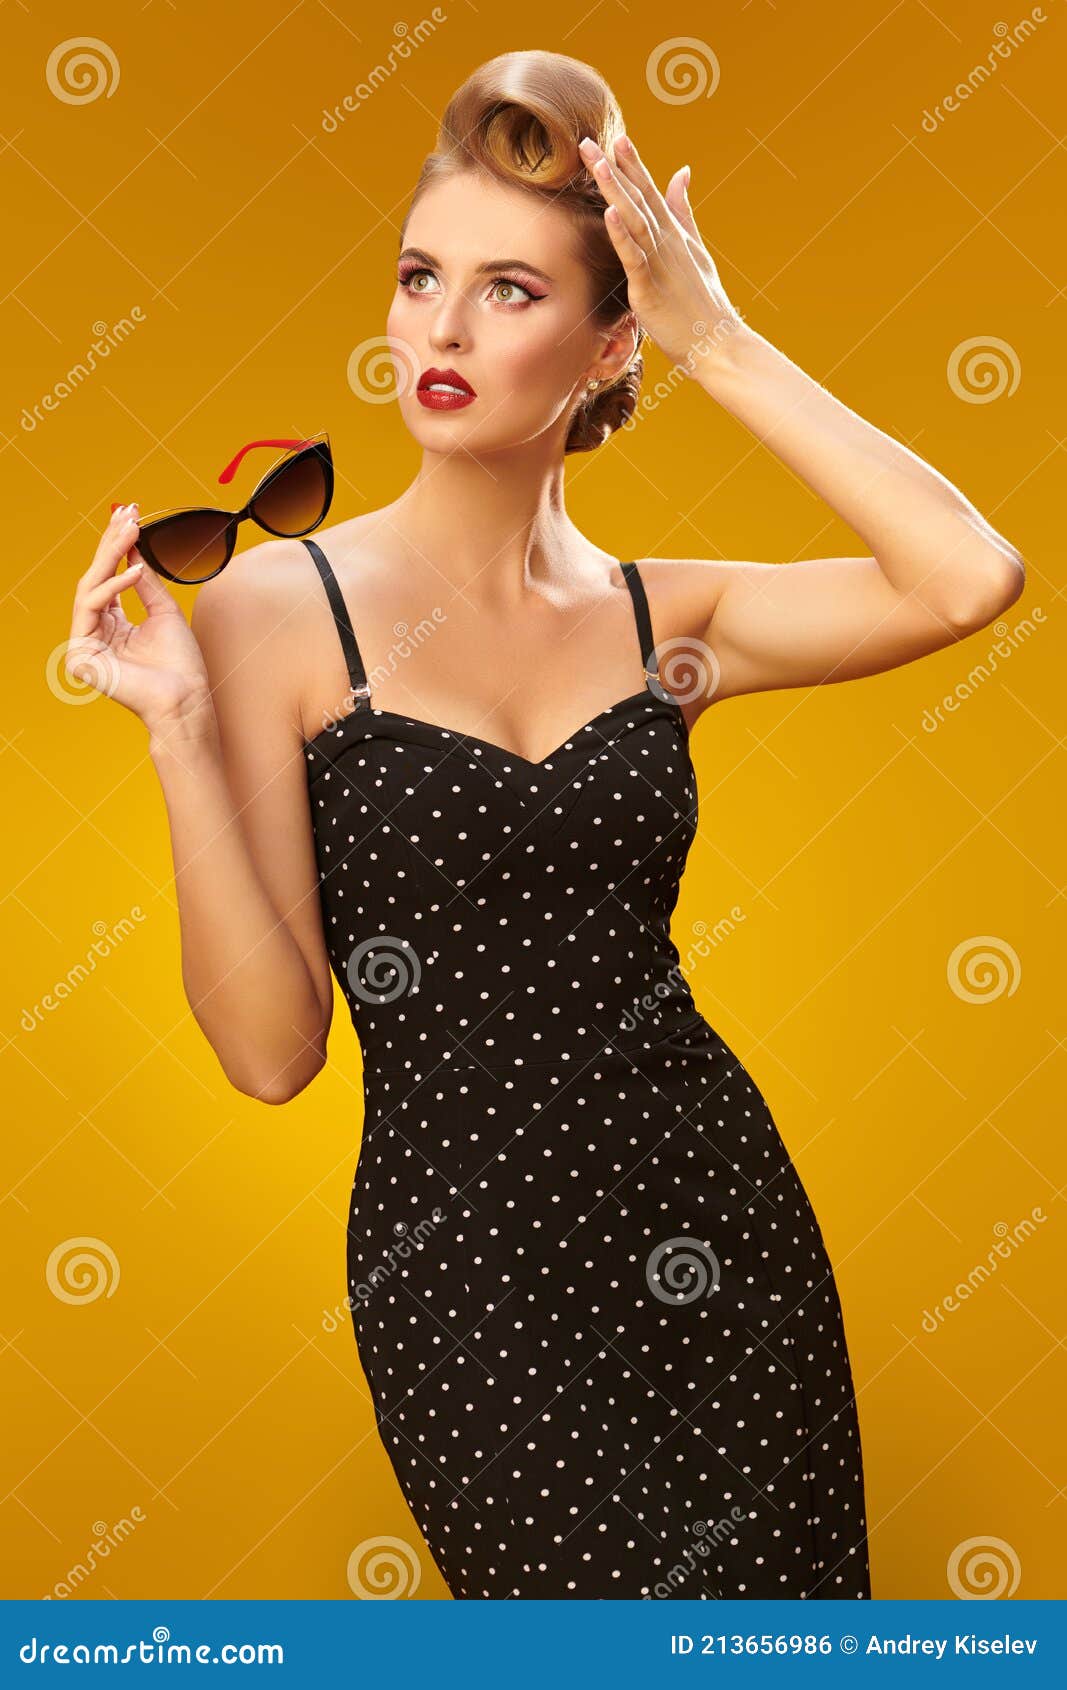 etiqueta Mamut Legibilidad Elegante Dama En Pin Up Style Foto de archivo - Imagen de feminidad,  seductor: 213656986